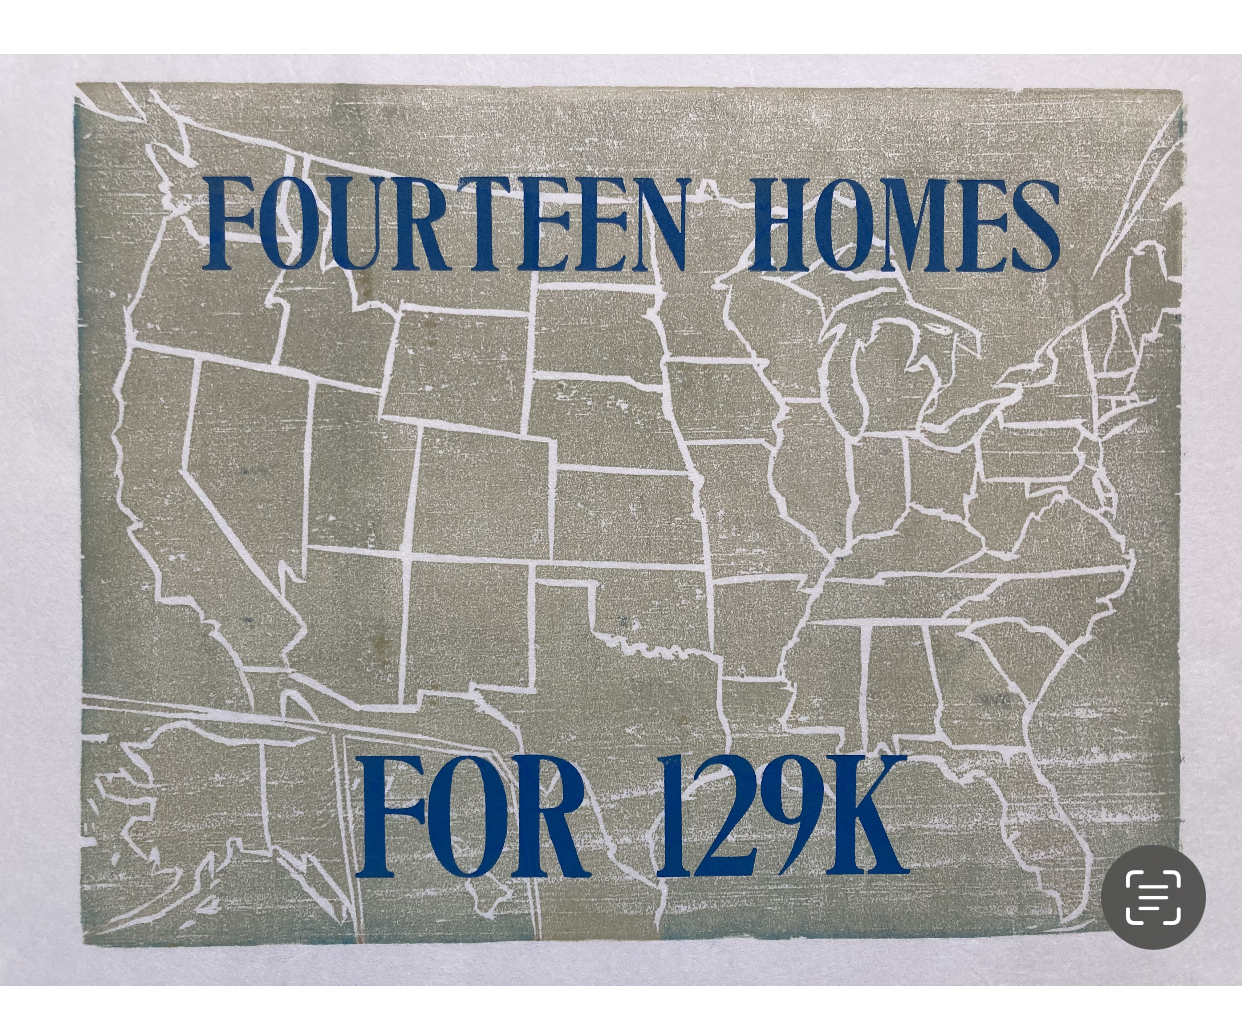 Nina Jordan | Fourteen Homes for 129K